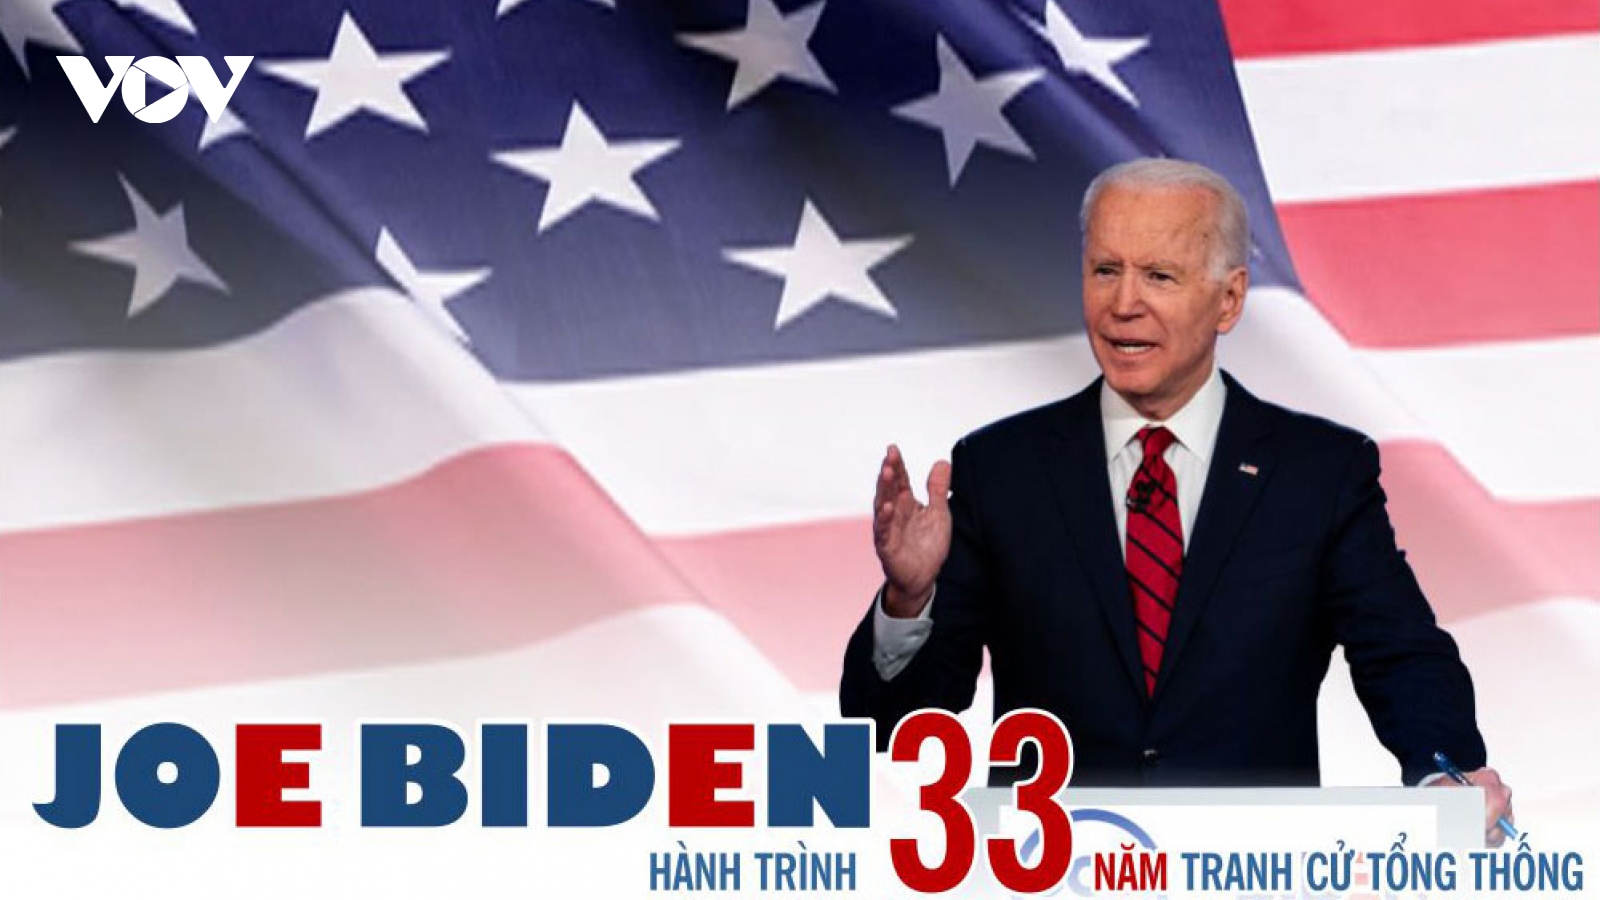 Infographic: Hành trình 33 năm tranh cử Tổng thống của ông Joe Biden